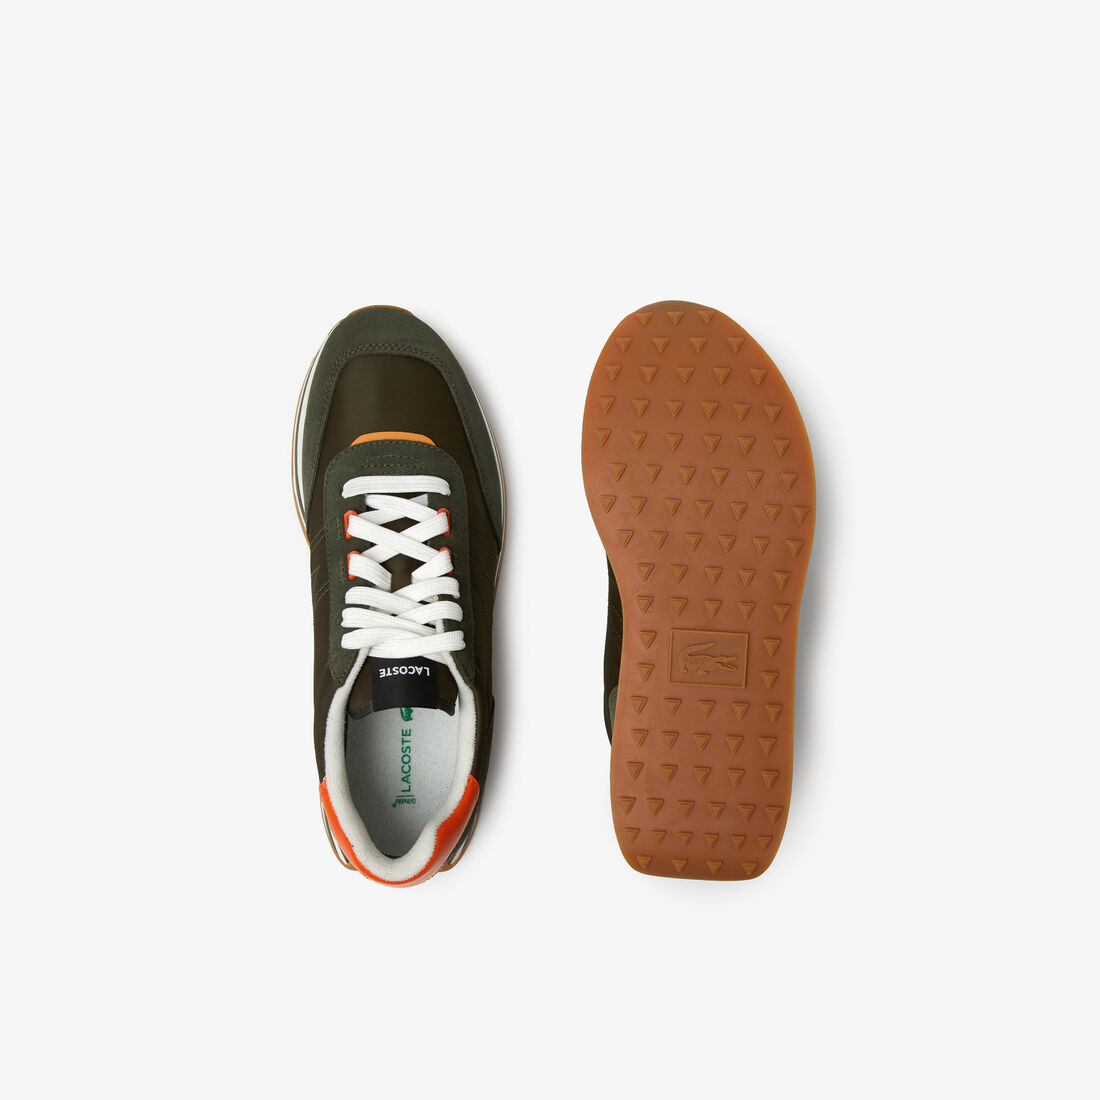 Lacoste L-spin Leder Color Contrast Sneakers Herren Navy Orange | YFHT-73285